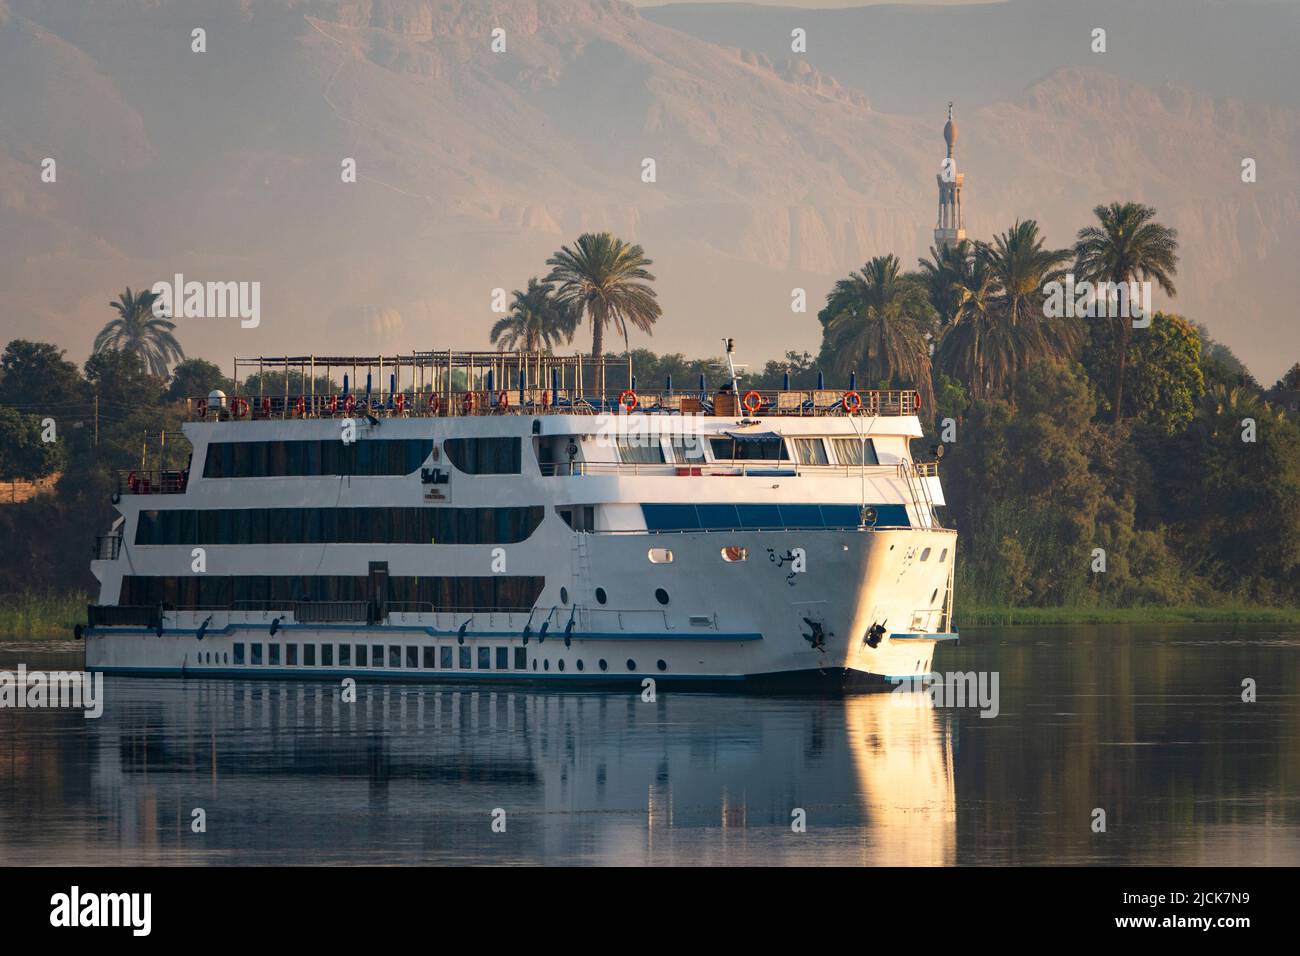 Bateau de croisière sur le Nil naviguant sur l'eau calme avec des reflets de palmiers, mosquée, montagne et navire dans la lumière du matin Banque D'Images